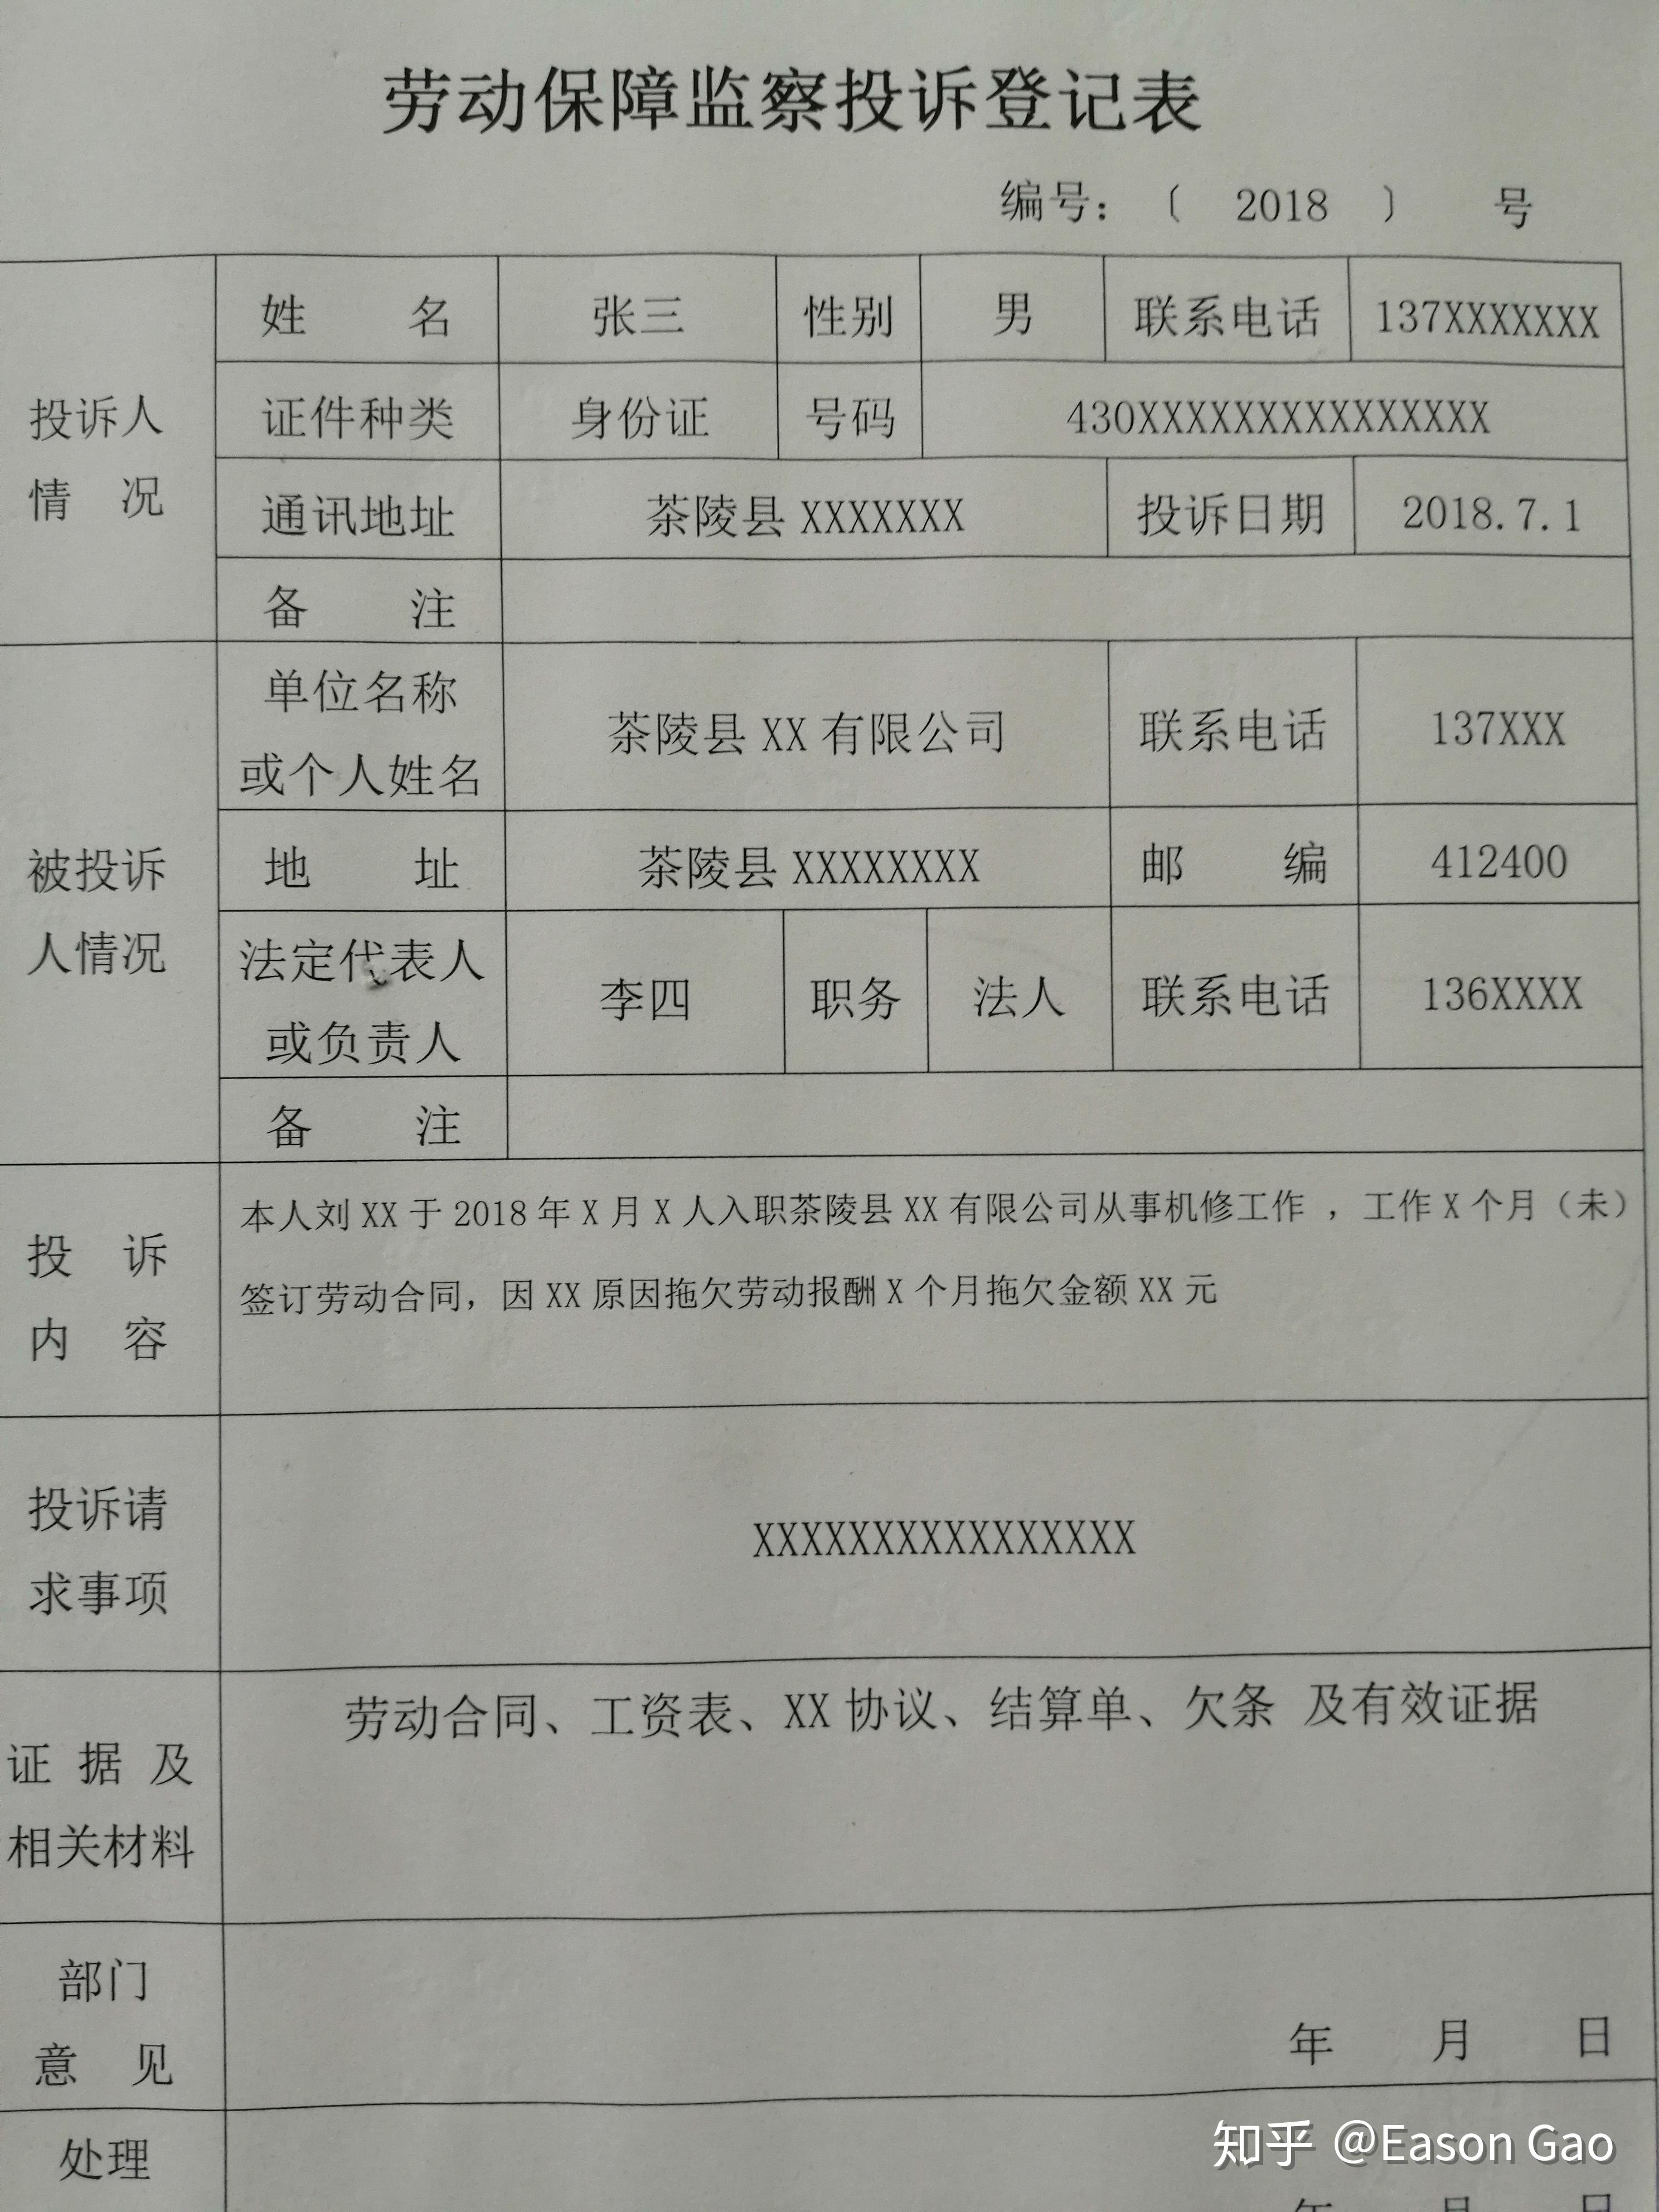 3月10号,到劳动局监察部,反映公司拖欠工资的情况,填一张投诉登记表